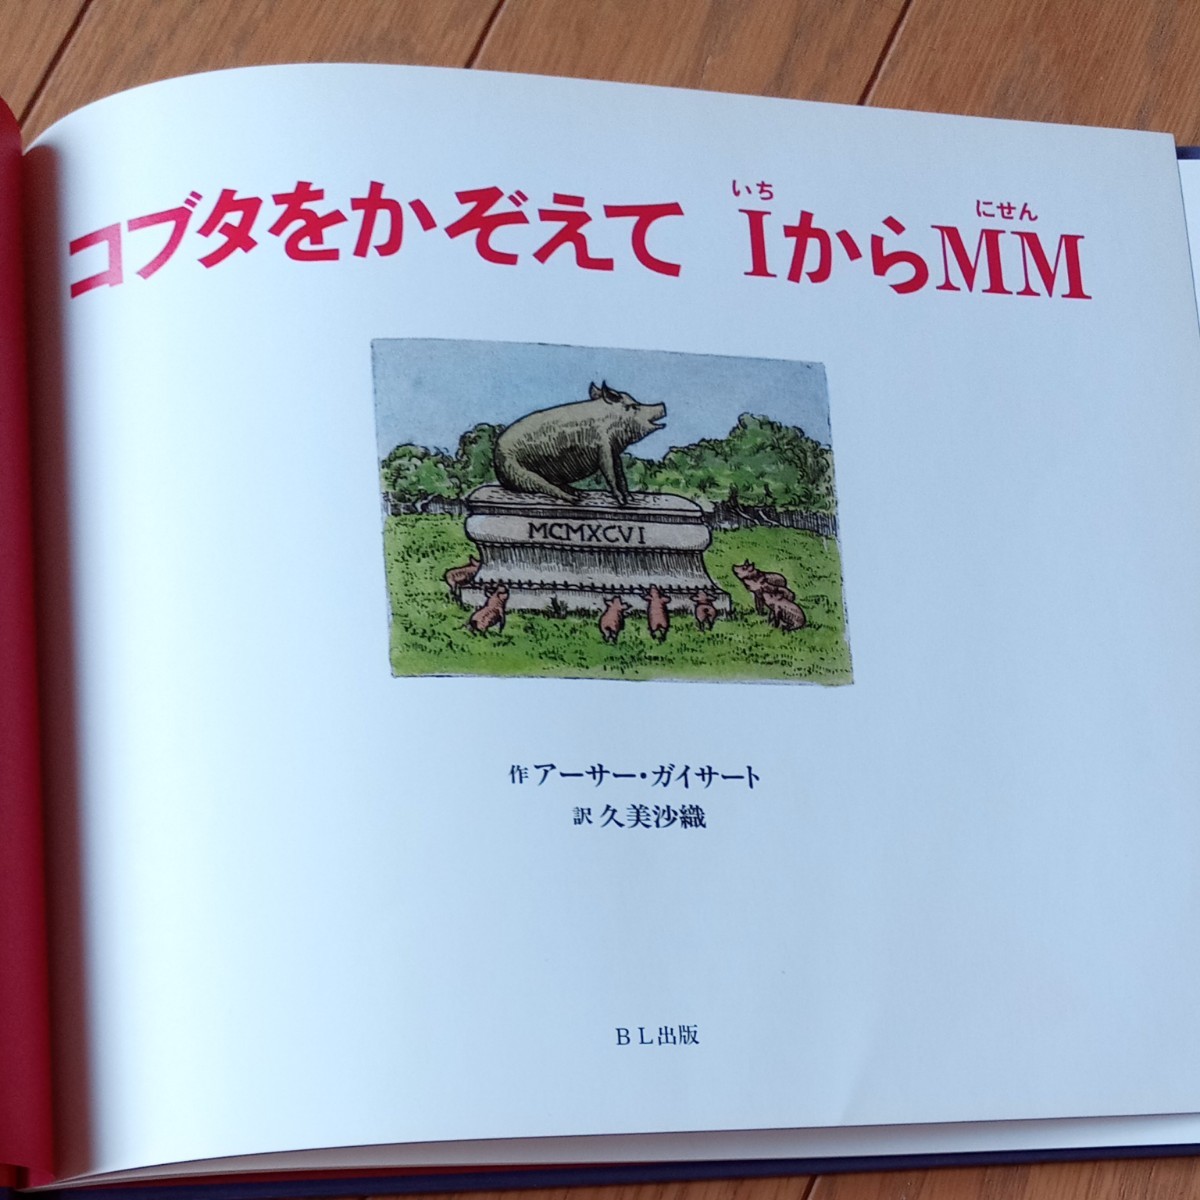 絶版絵本「コブタをかぞえて1からMM」（コブタをかぞえていちからにせん）『ふわふわブイブイ気球旅行』